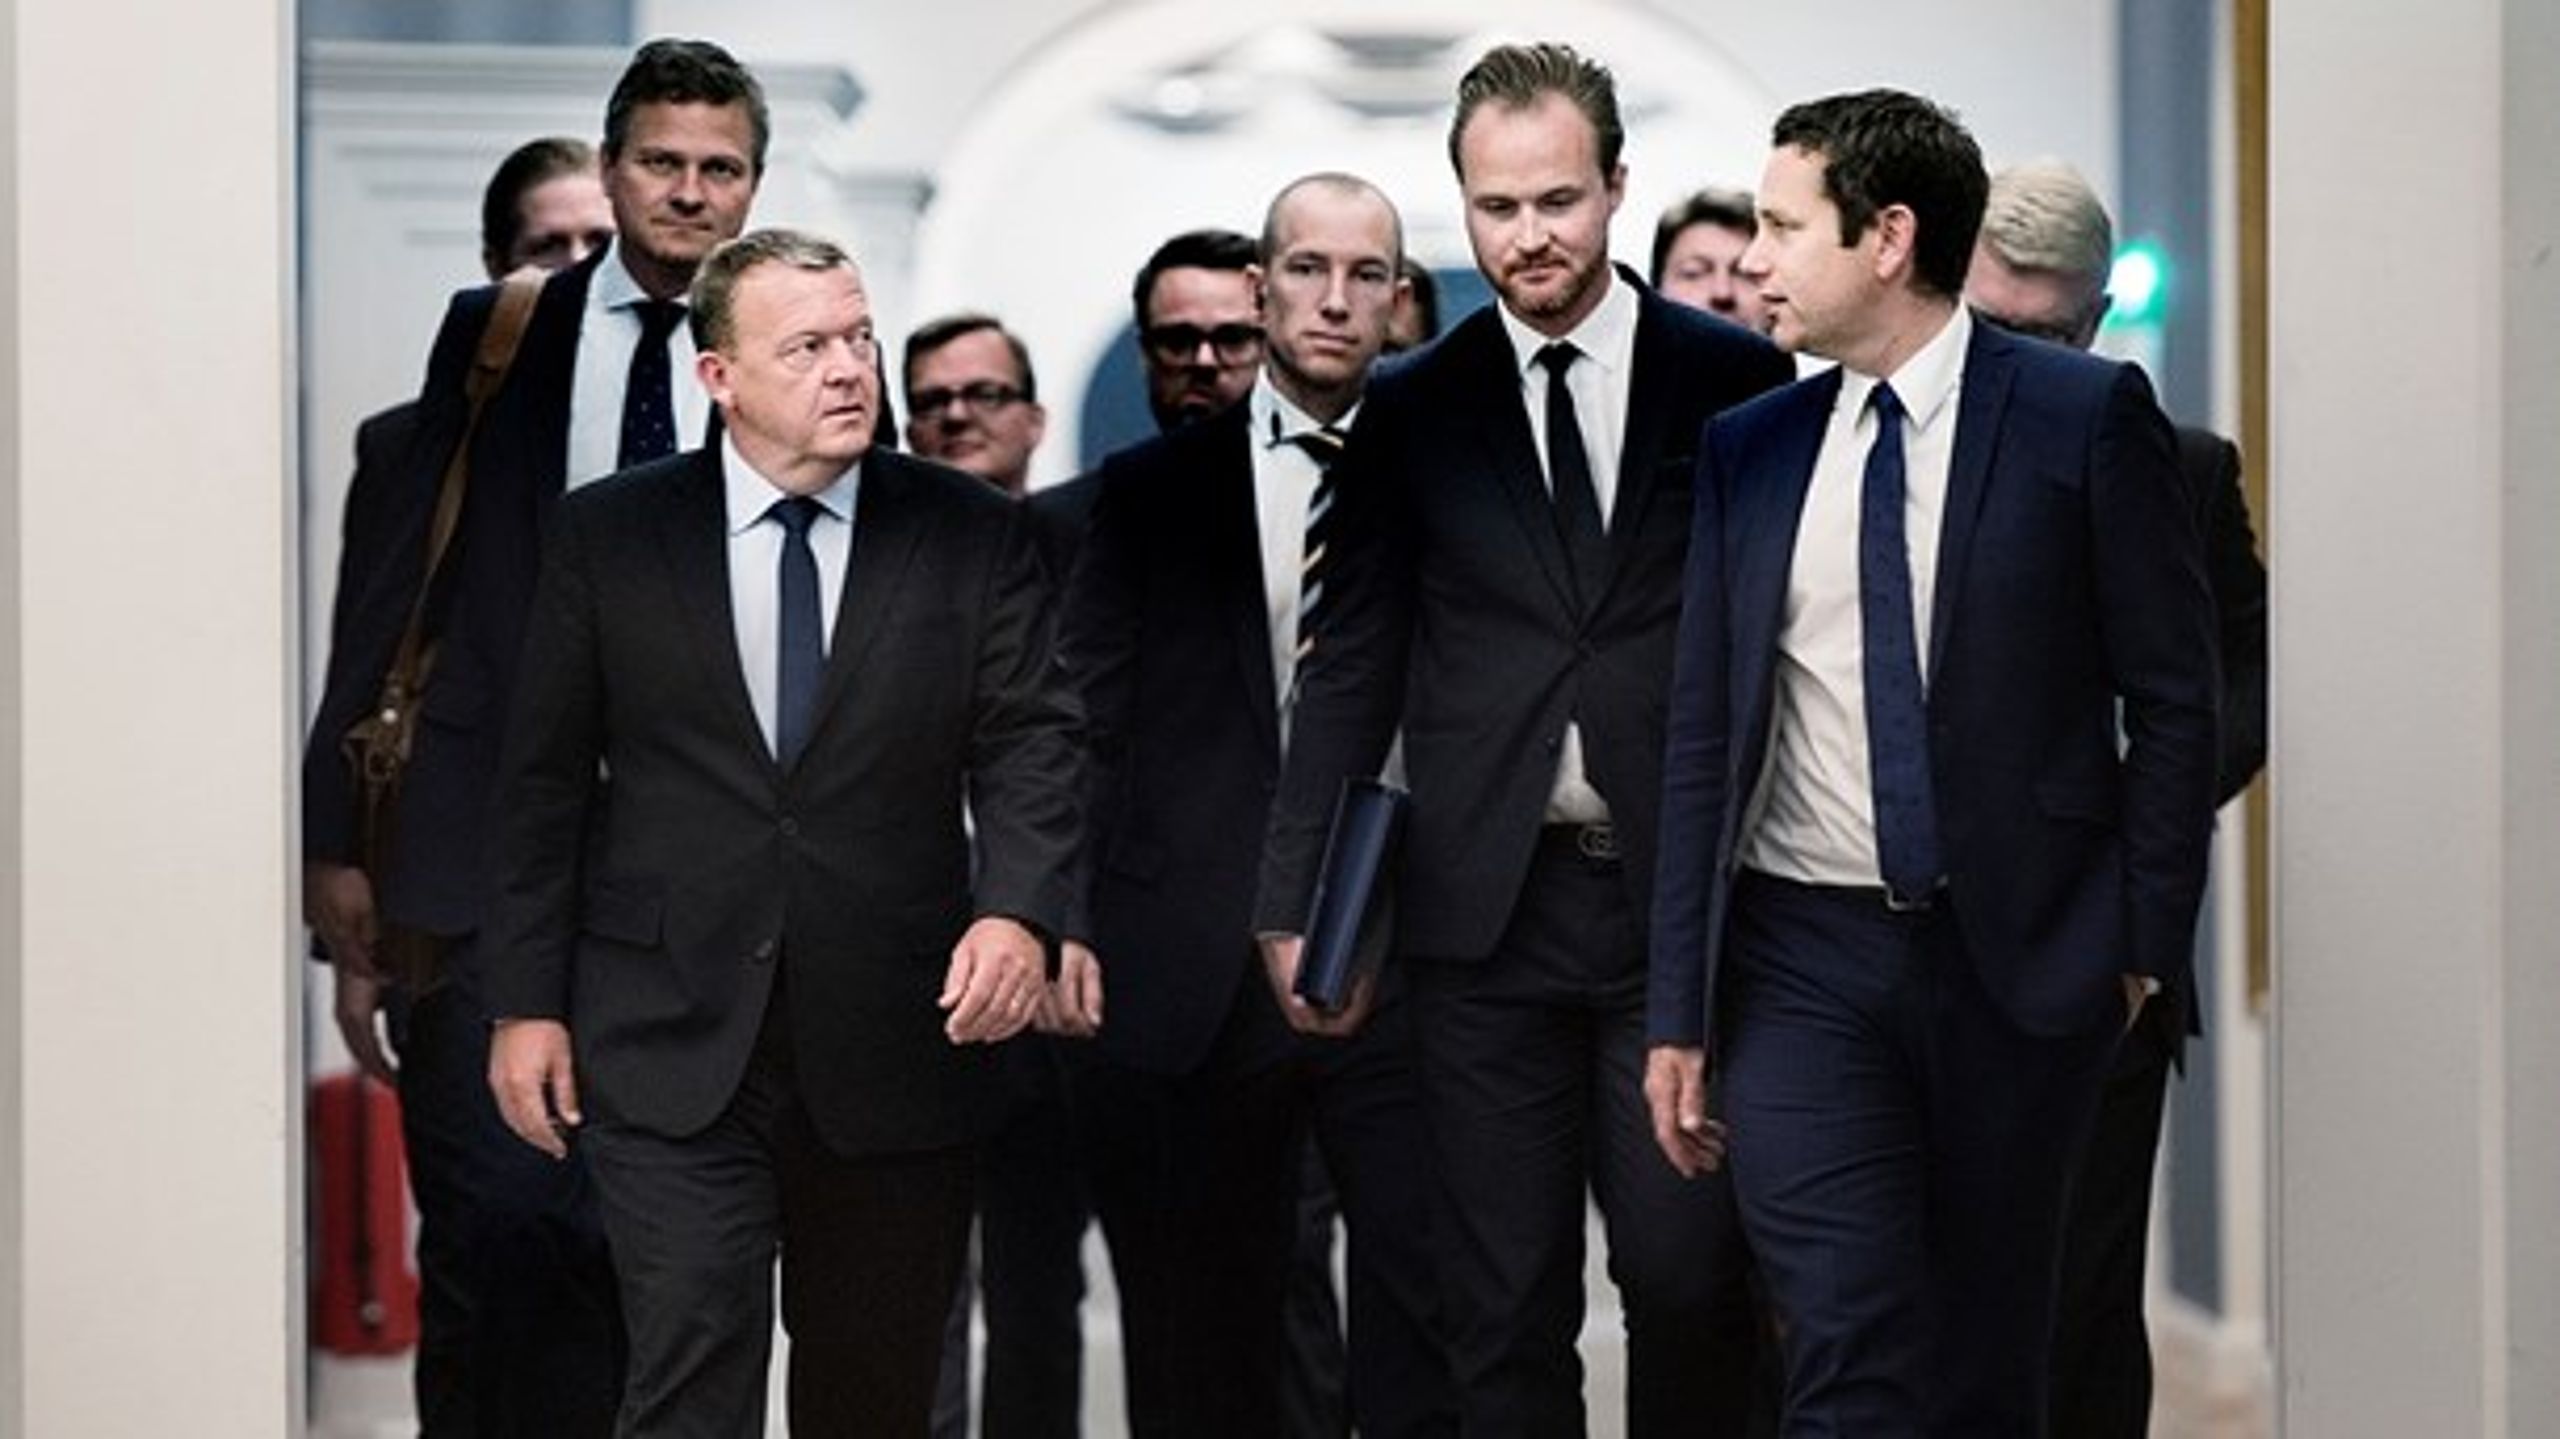 Statsministerens udenrigsrådgiver, Michael Starbæk Christensen (lige bag Lars Løkke til venstre i&nbsp;billedet), giver sit bud på EU's udfordringer i ugens podcast.